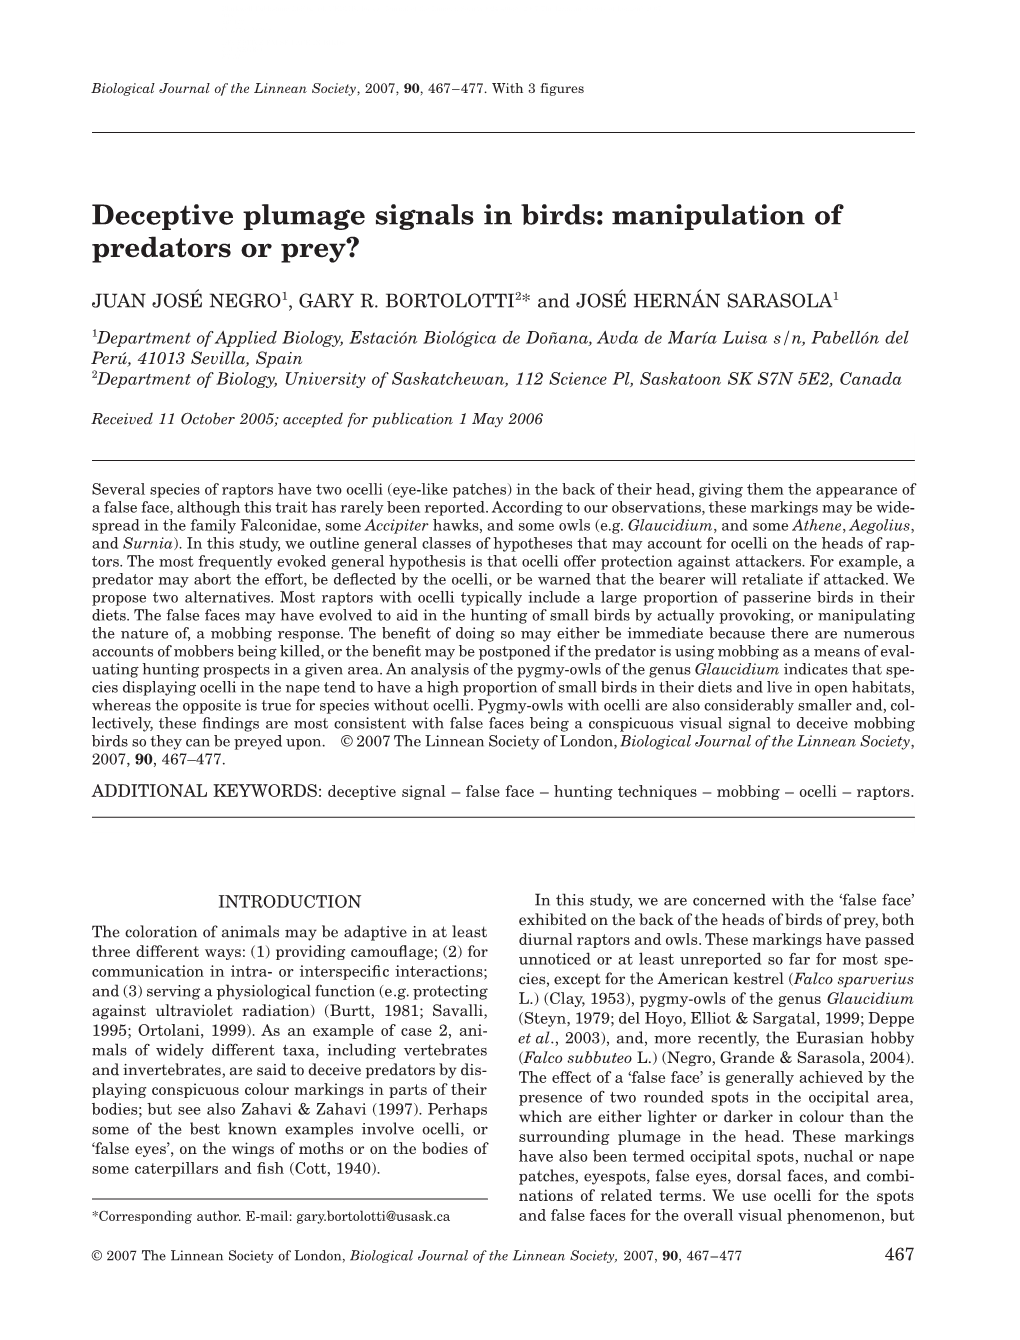 Deceptive Plumage Signals in Birds: Manipulation of Predators Or Prey?